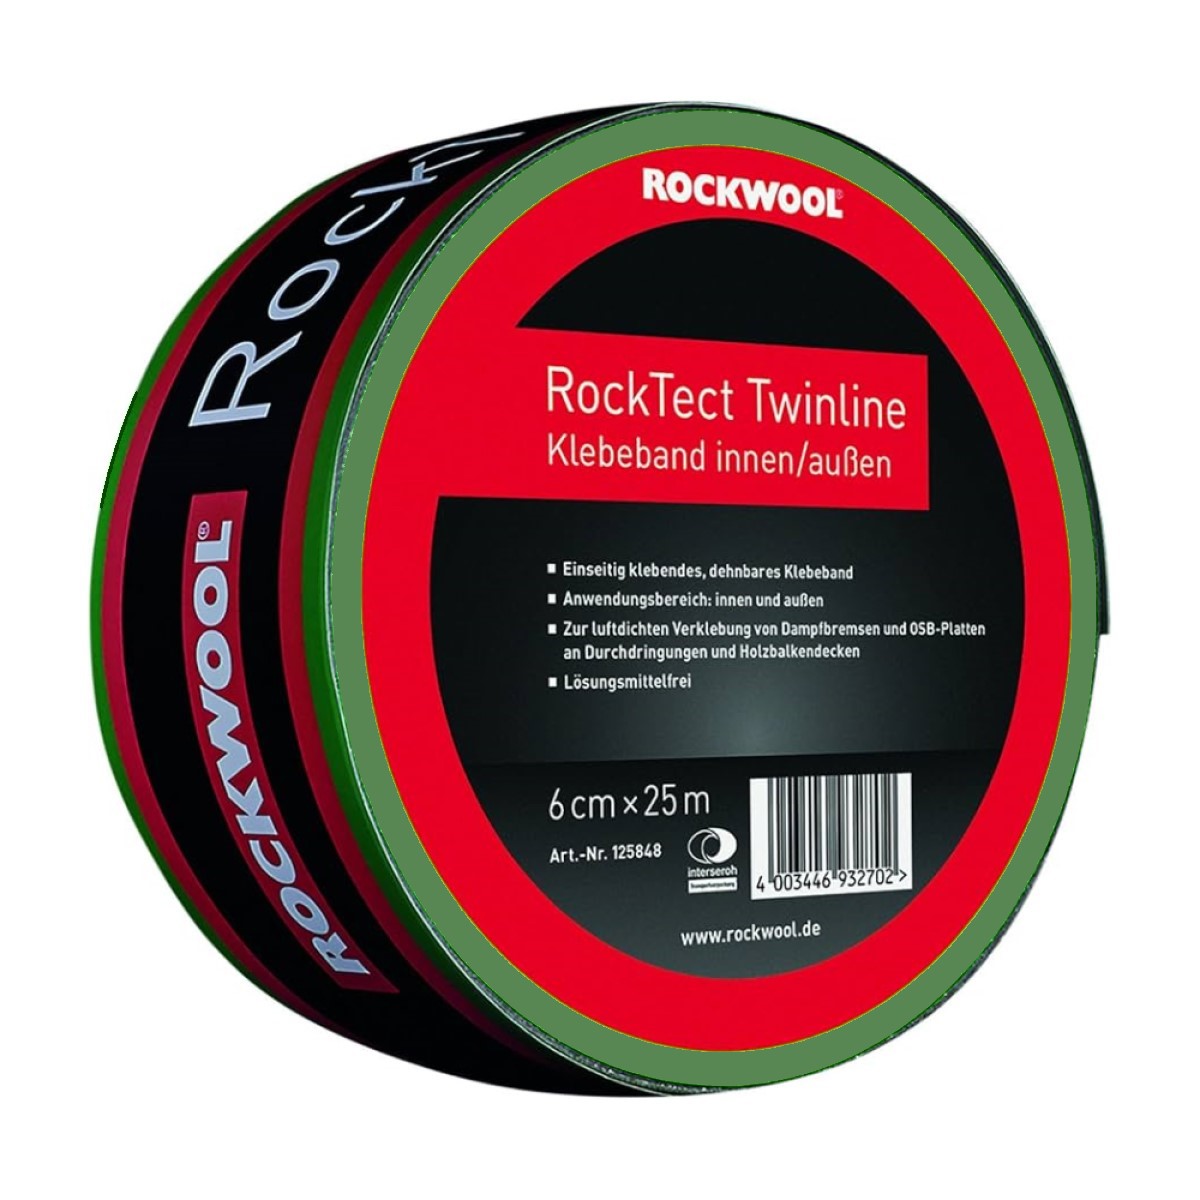 Rockwool RockTect Twinline Vienpusēja līmlente šuvju hermetizēšanai starp vēja izolācijas plātnēm